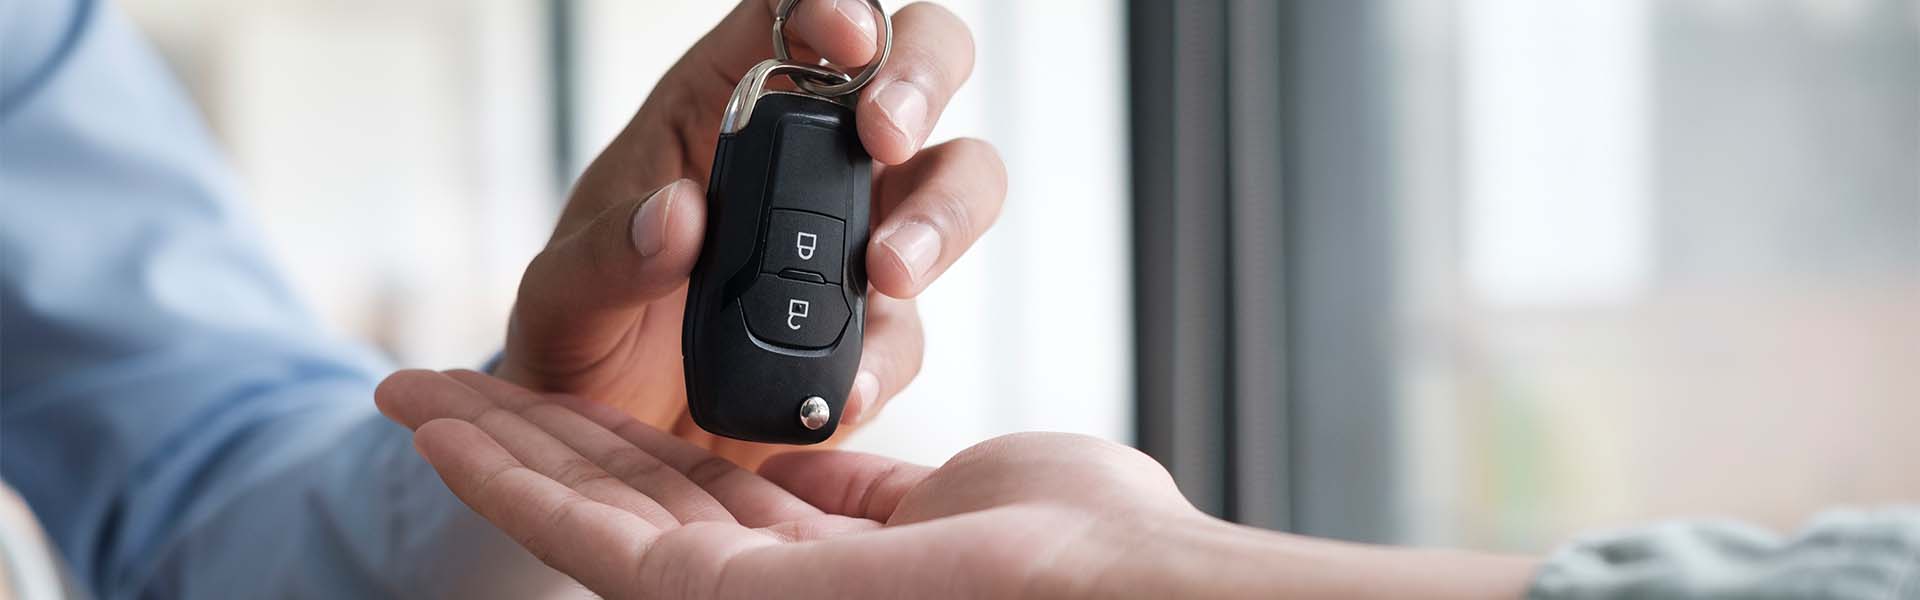 defining APR at Bennett Toyota of Lebanon in Lebanon | Sales Advisor Handing New Car Keys Over to Customer